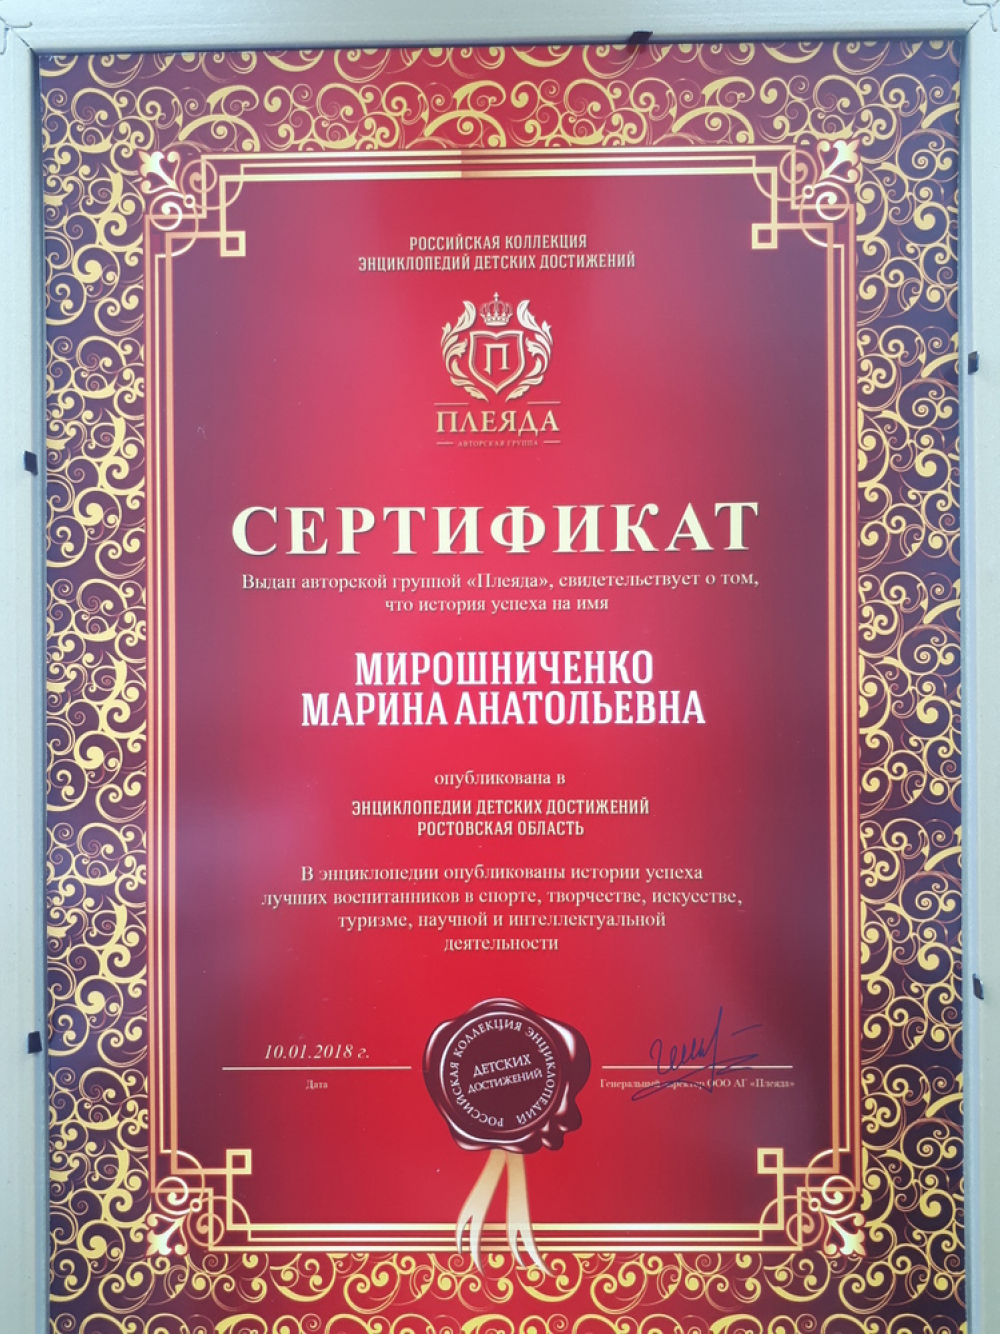 О волгодонцах написали в энциклопедии детских достижений Ростовской области